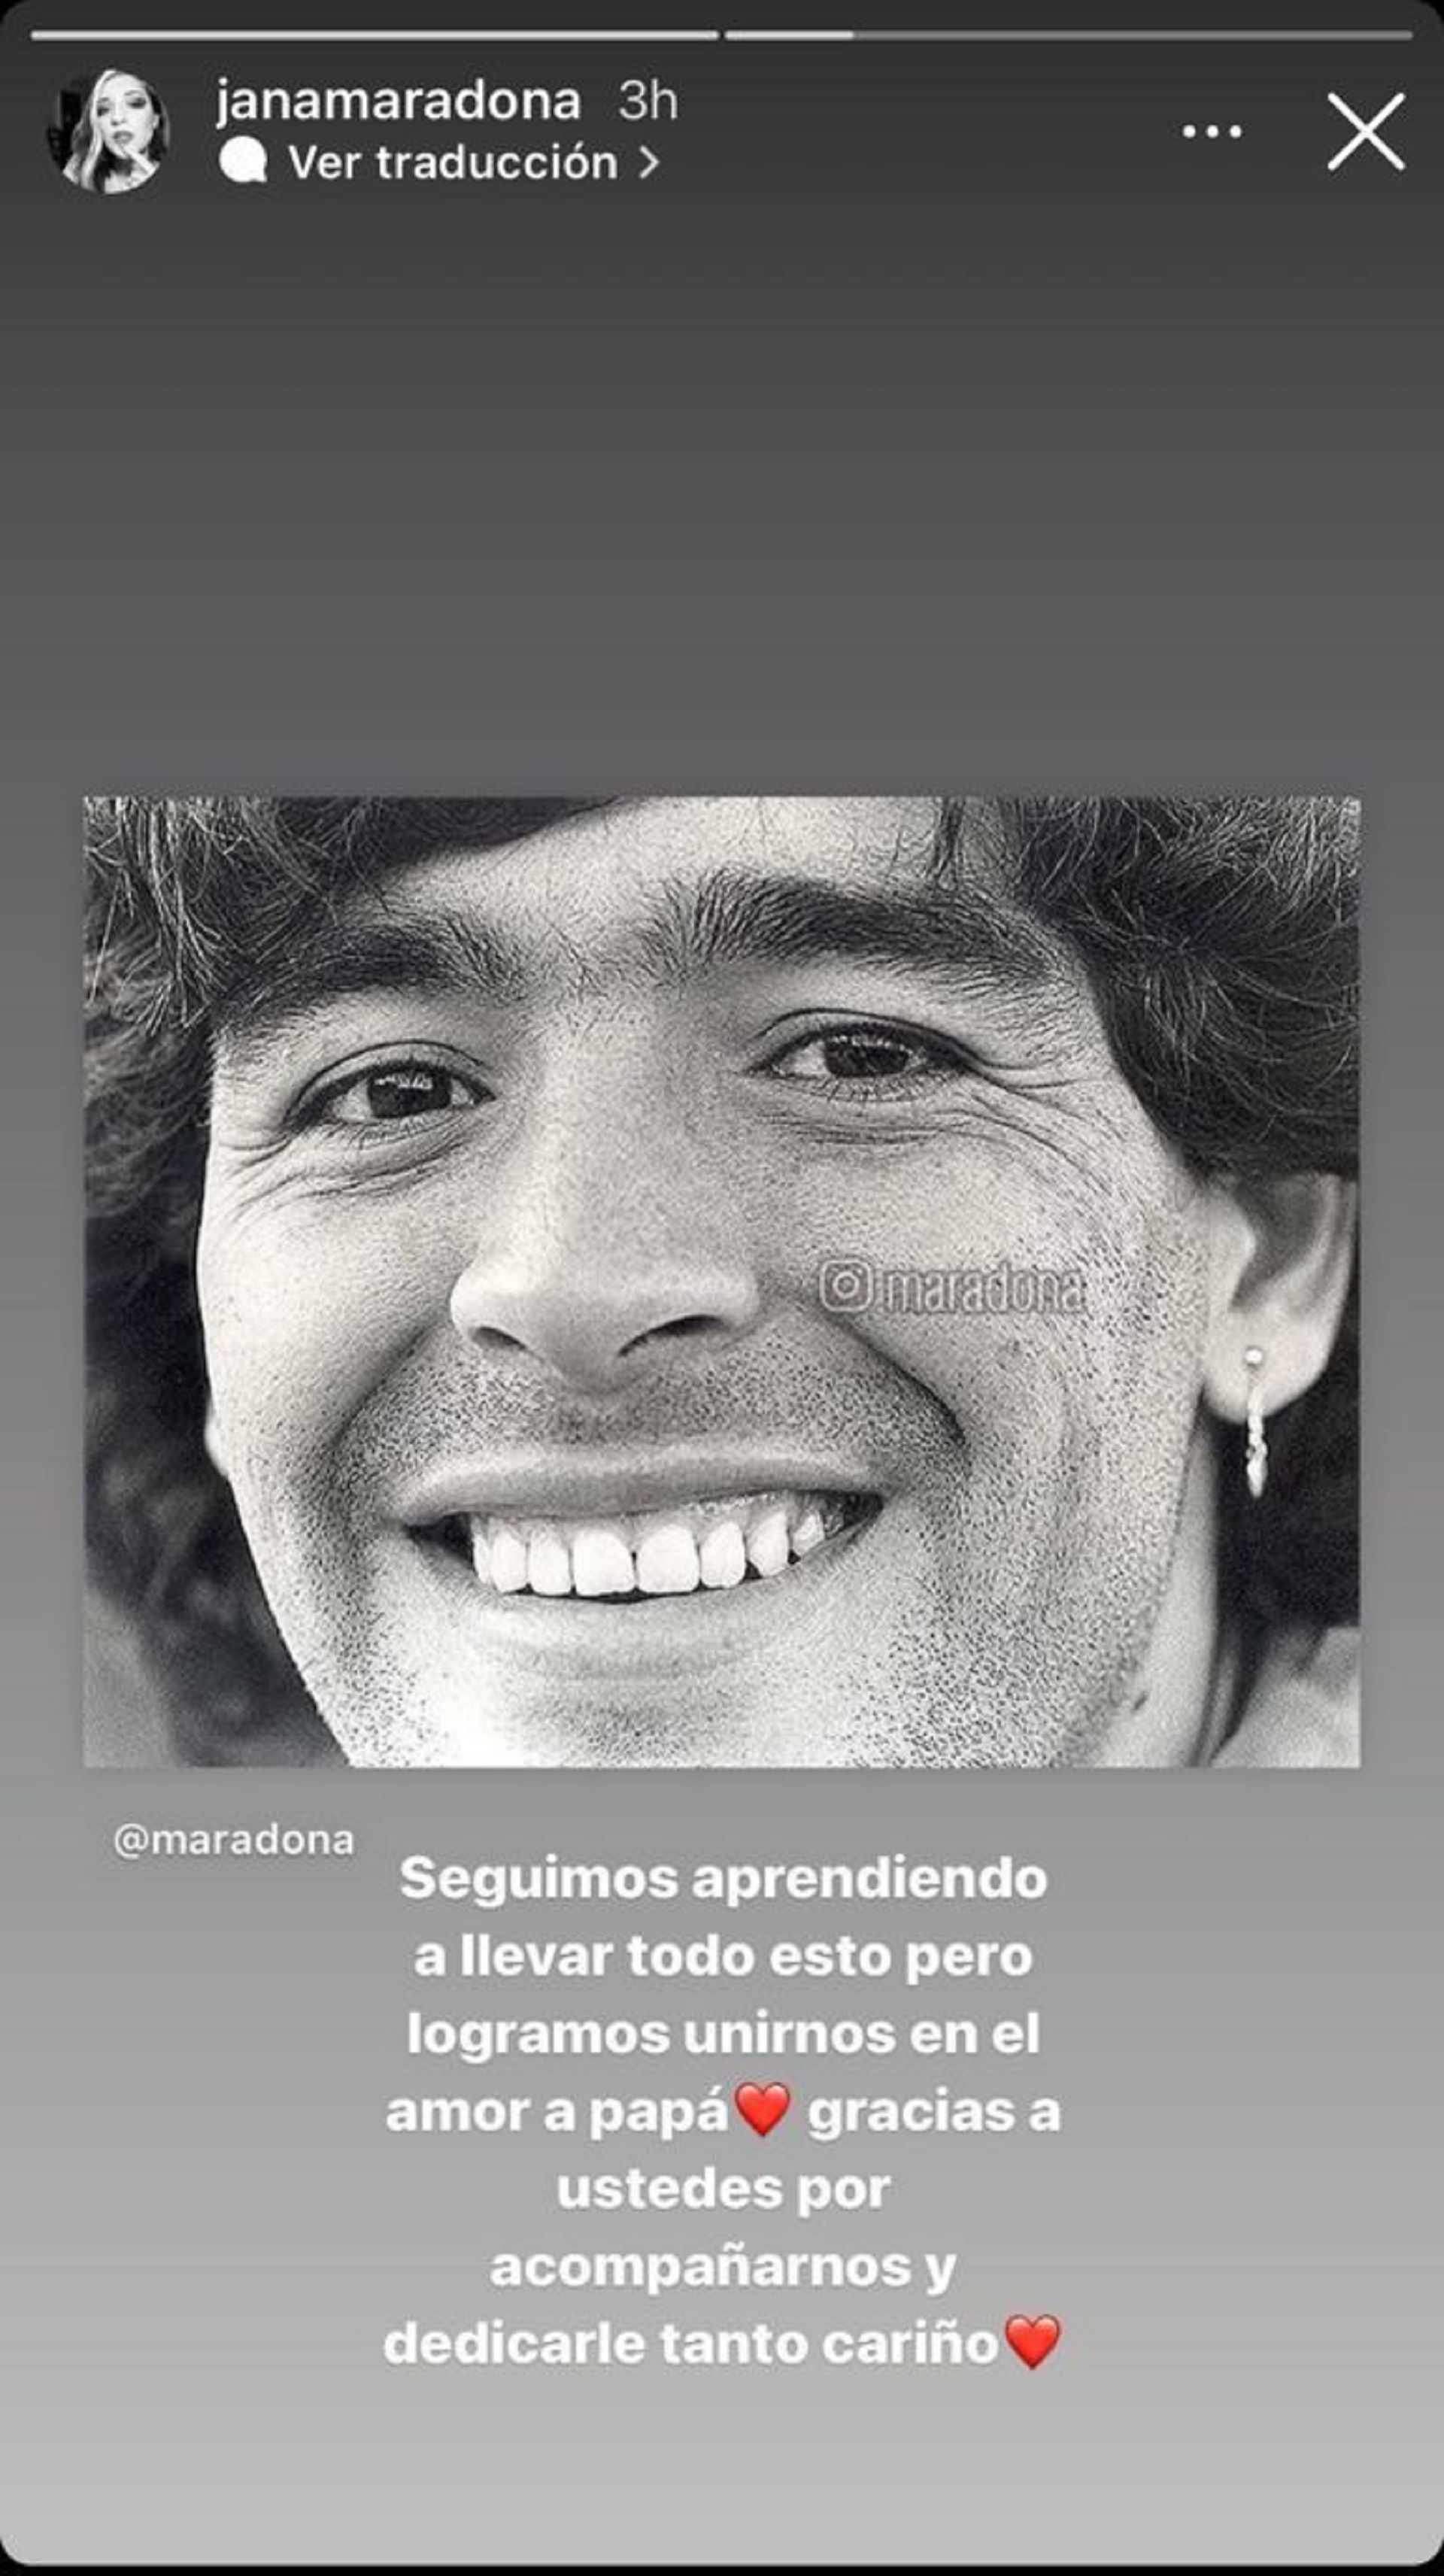 El posteo de Jana Maradona